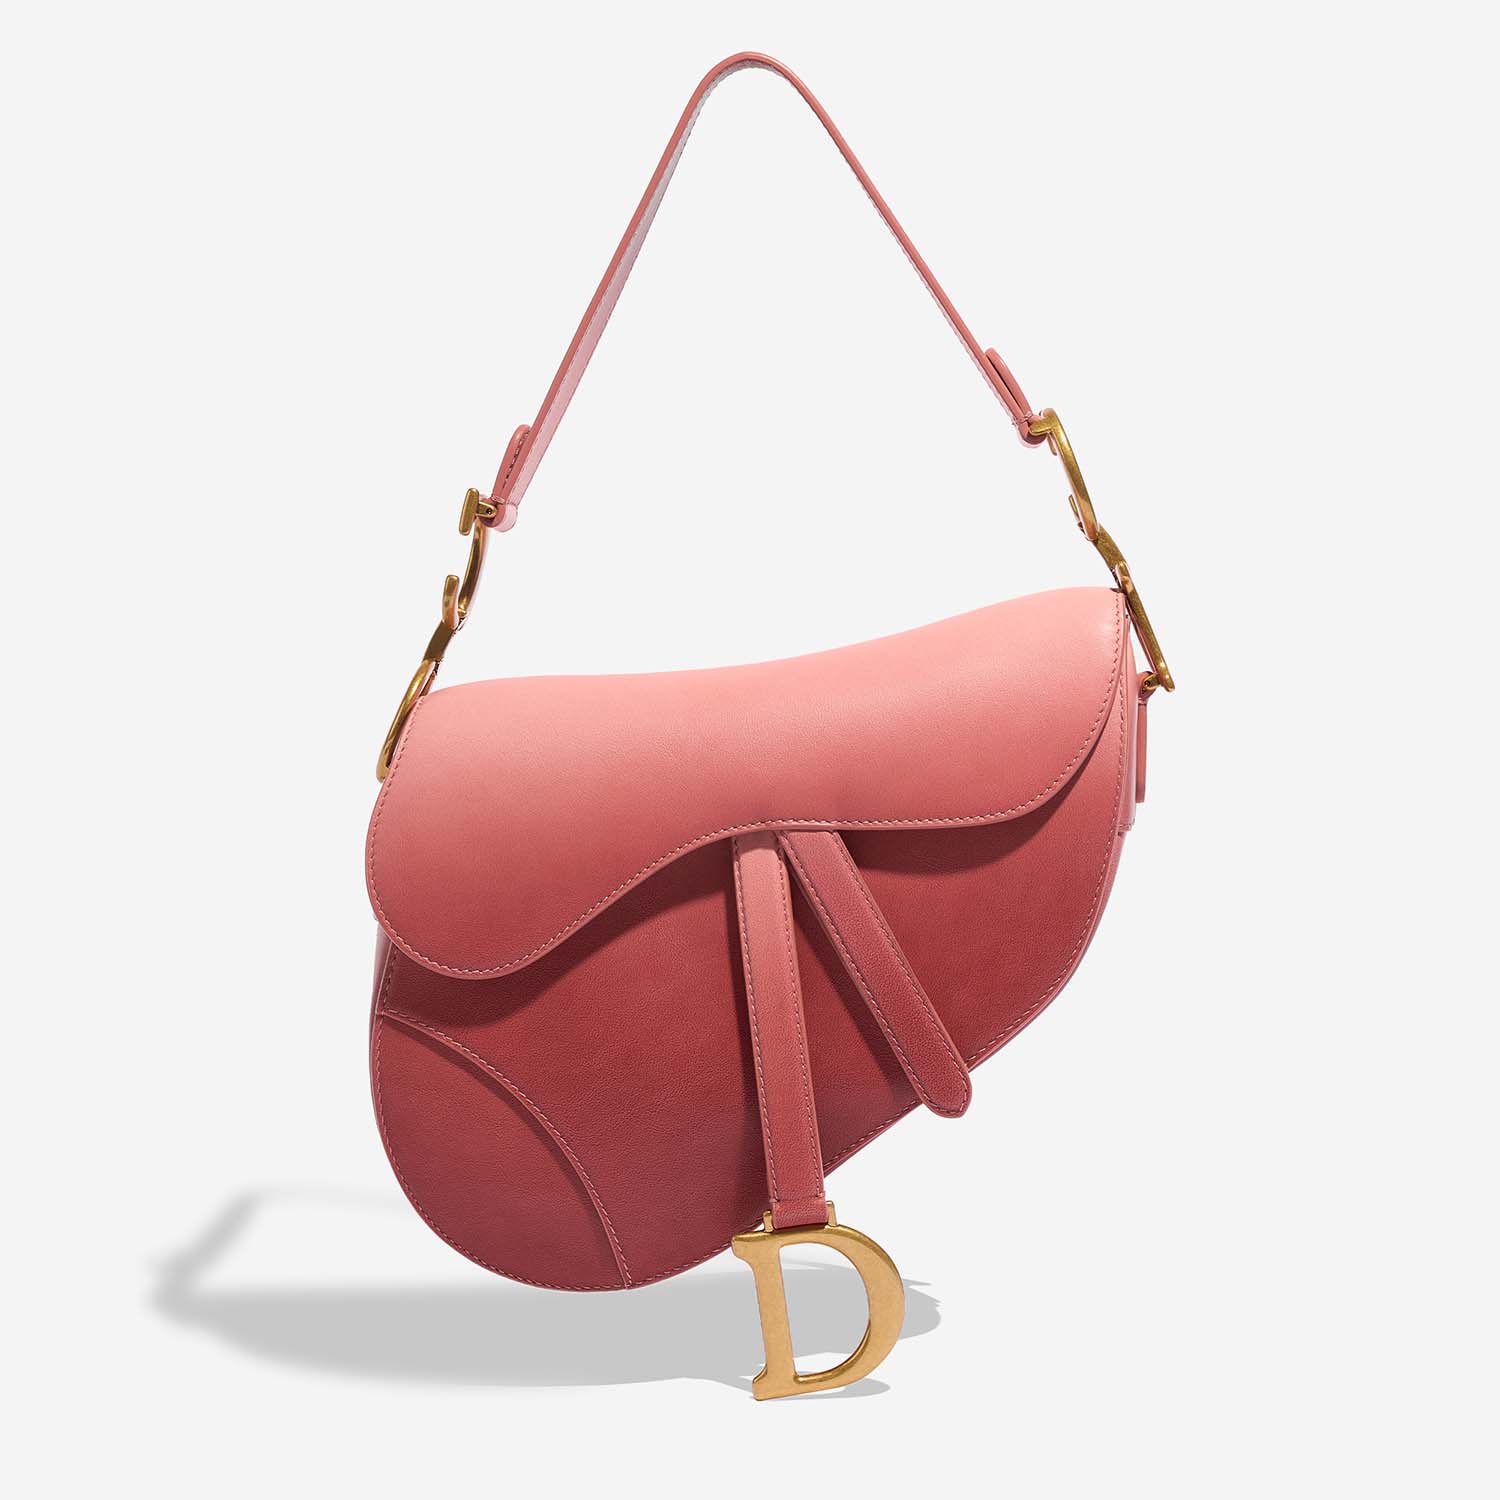 Dior Saddle Medium Pink Front | Verkaufen Sie Ihre Designertasche auf Saclab.com